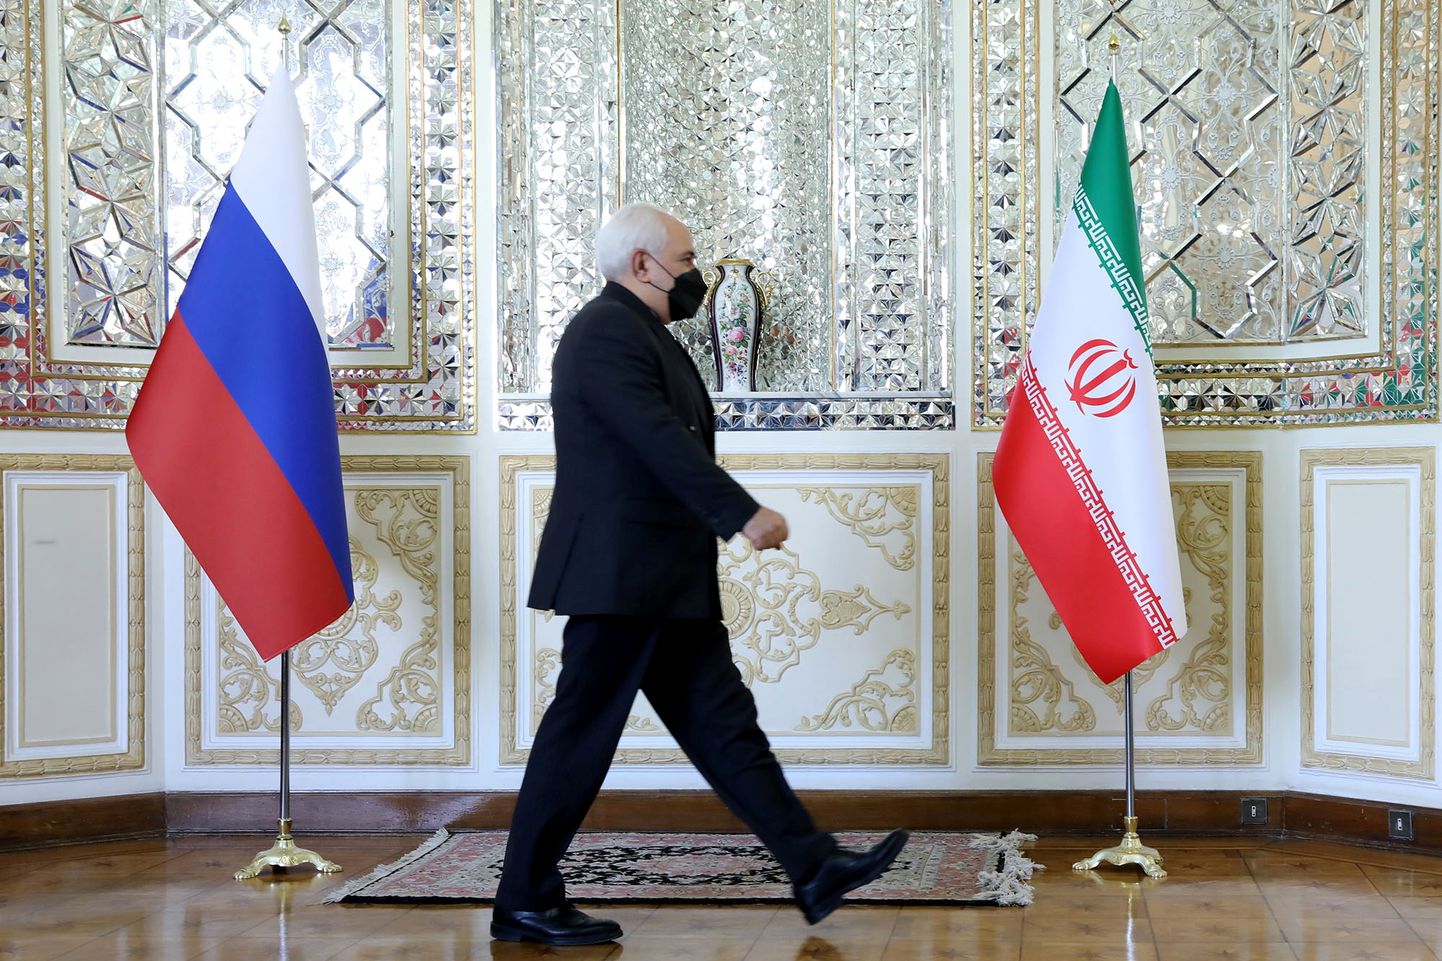 Iraani välisminister Mohammad Javad Zarif möödumas Iraani ja Venemaa lipust enne kohtumist Venemaa välisministri Sergei Lavroviga Teheranis.